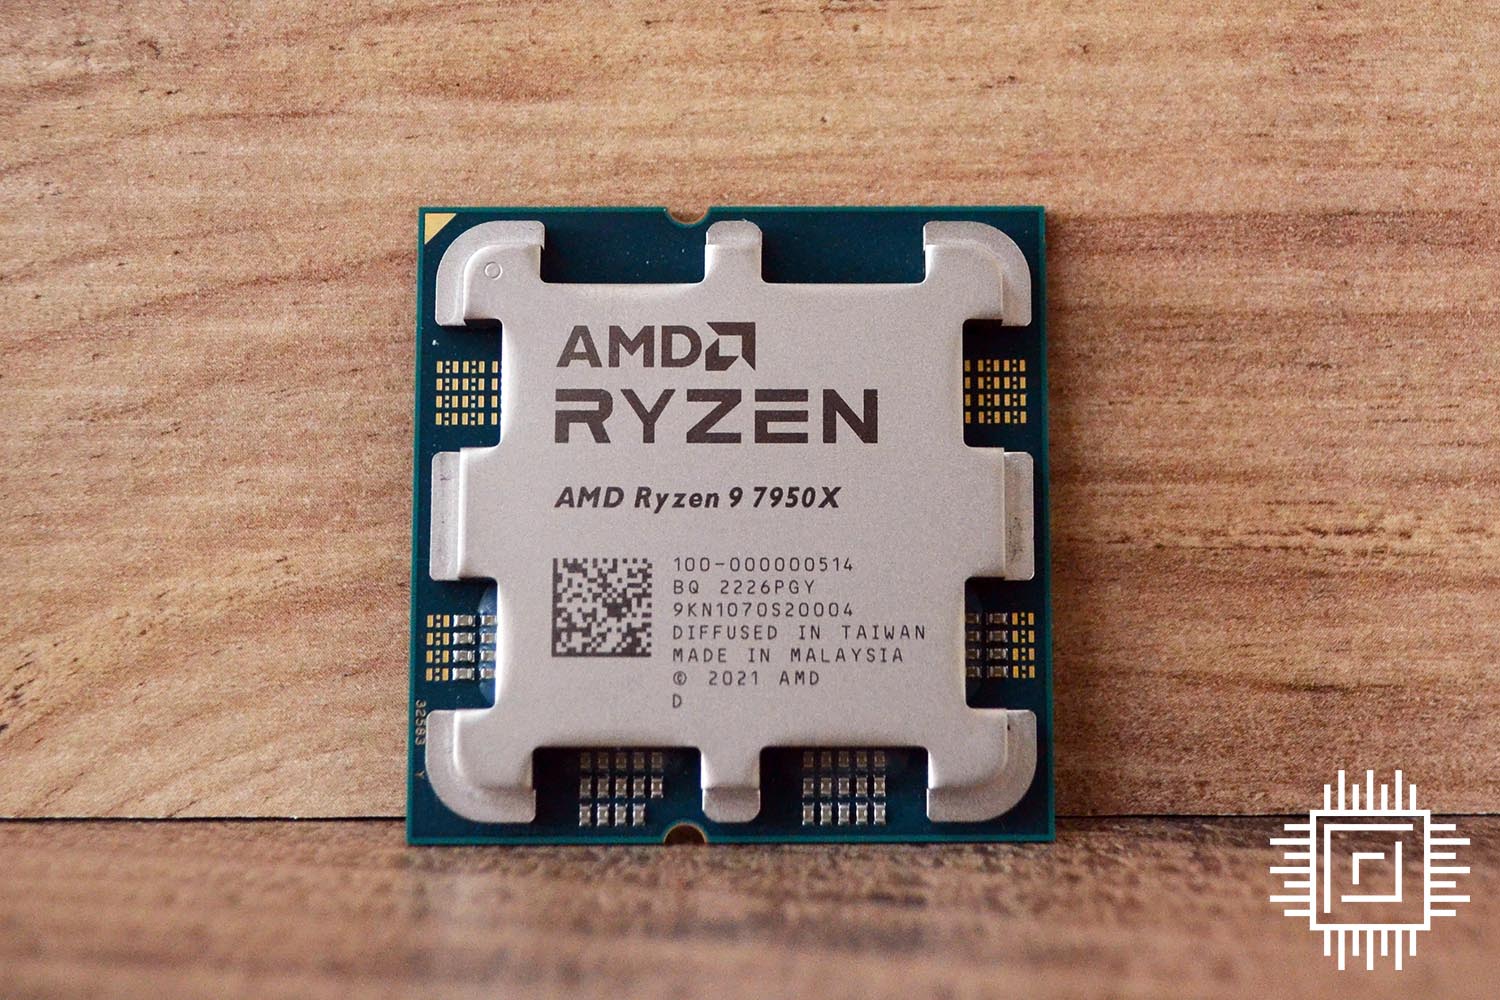 AMD Ryzen 9 7950X review: Zen master